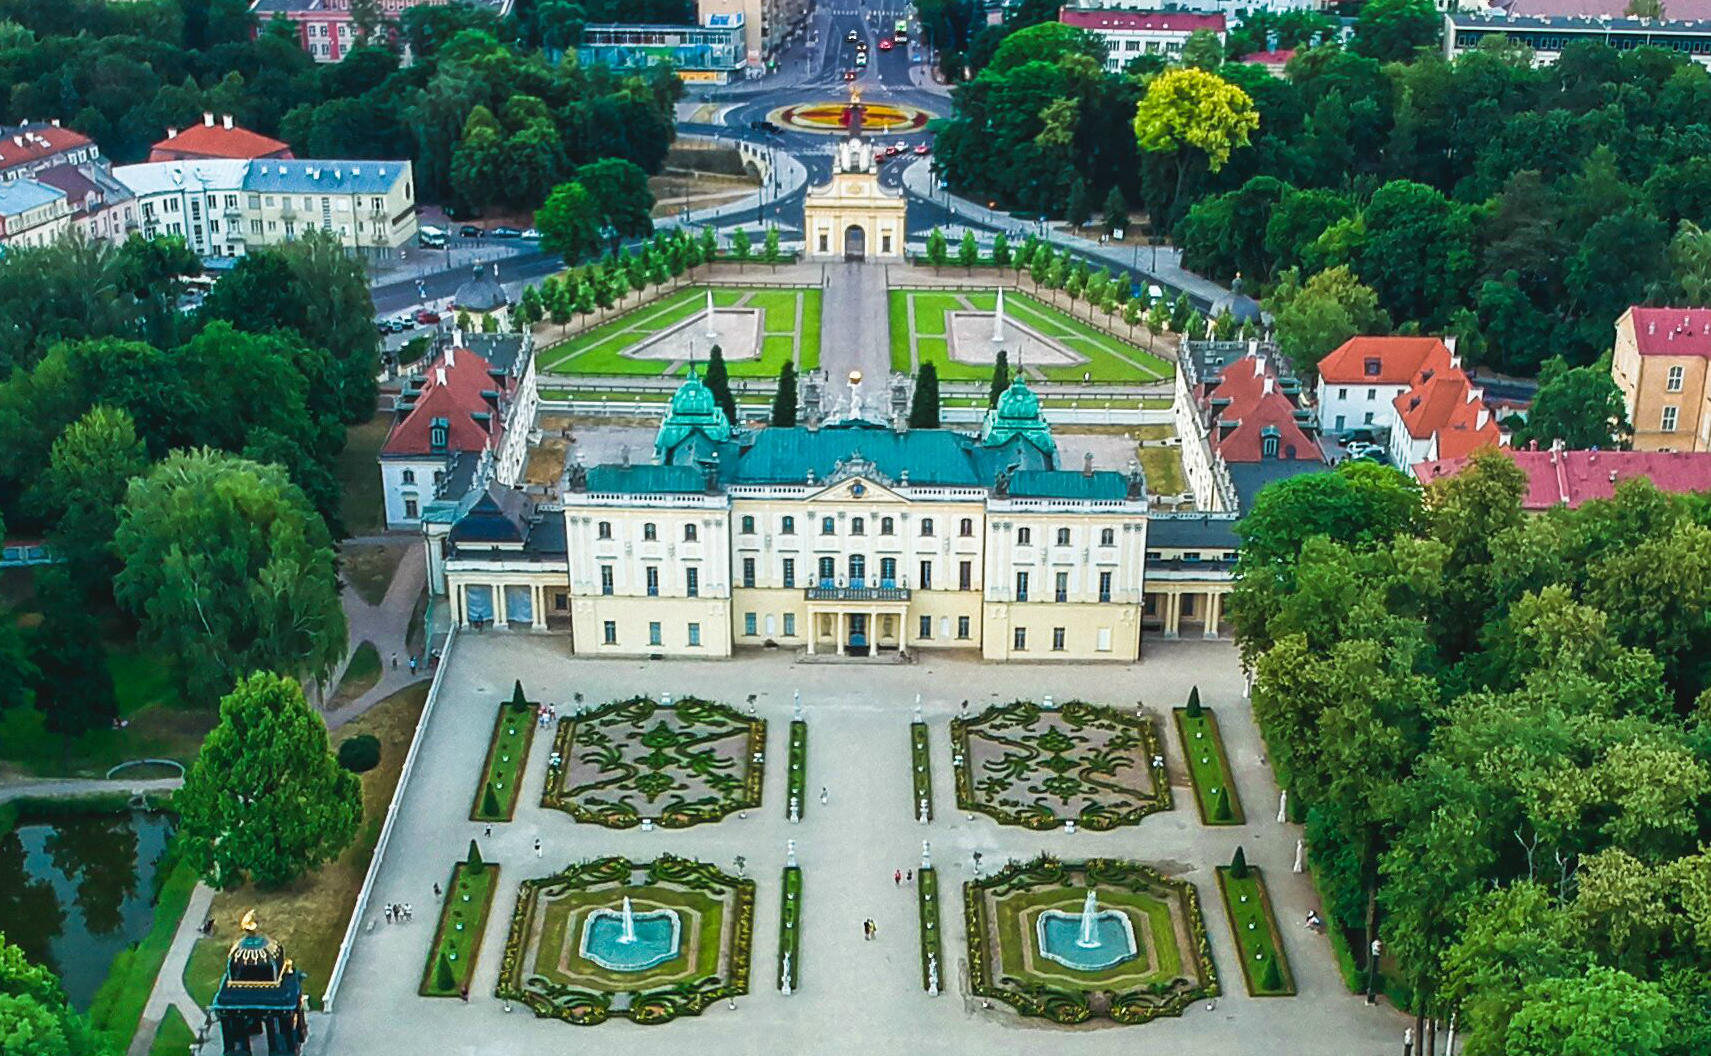 Rysunek Pałacu Branickich. Widok od strony parku.